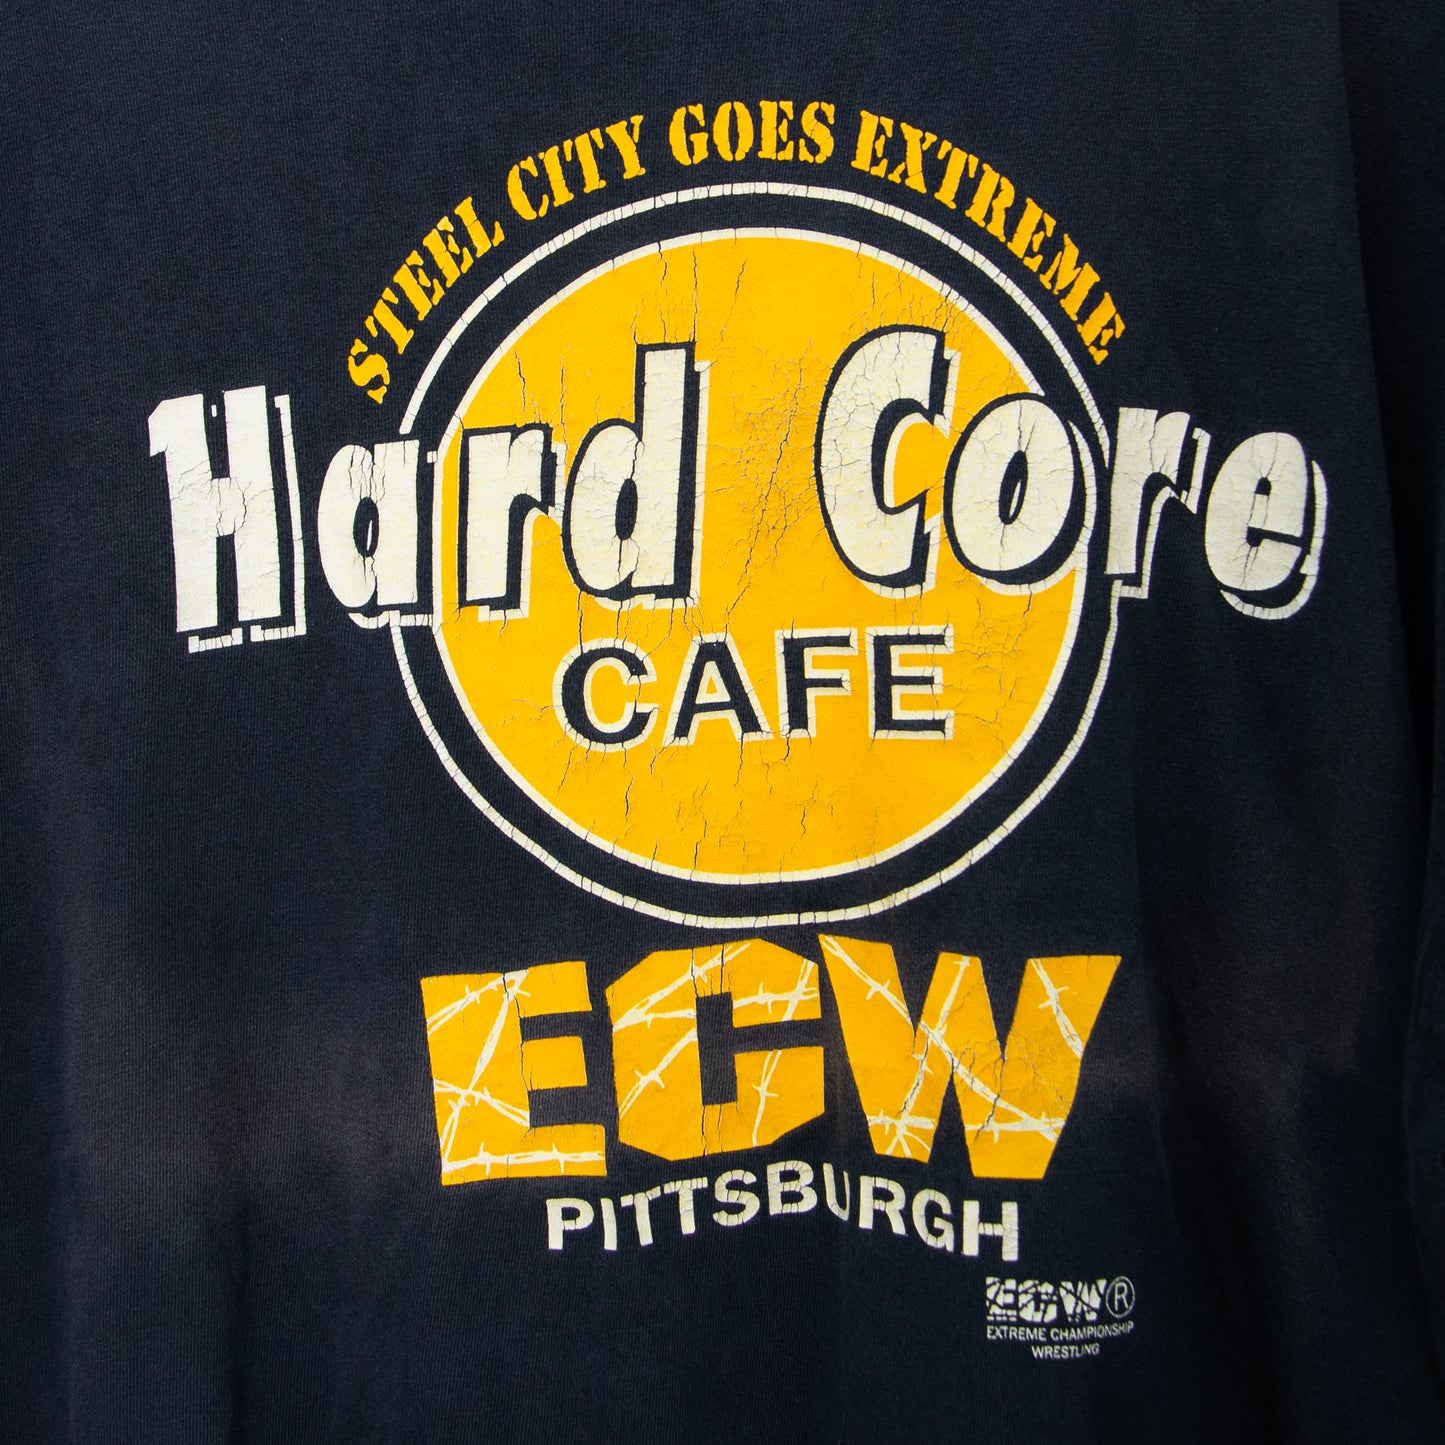 1998 ECW Hard Core Cafe T-Shirt 2XL